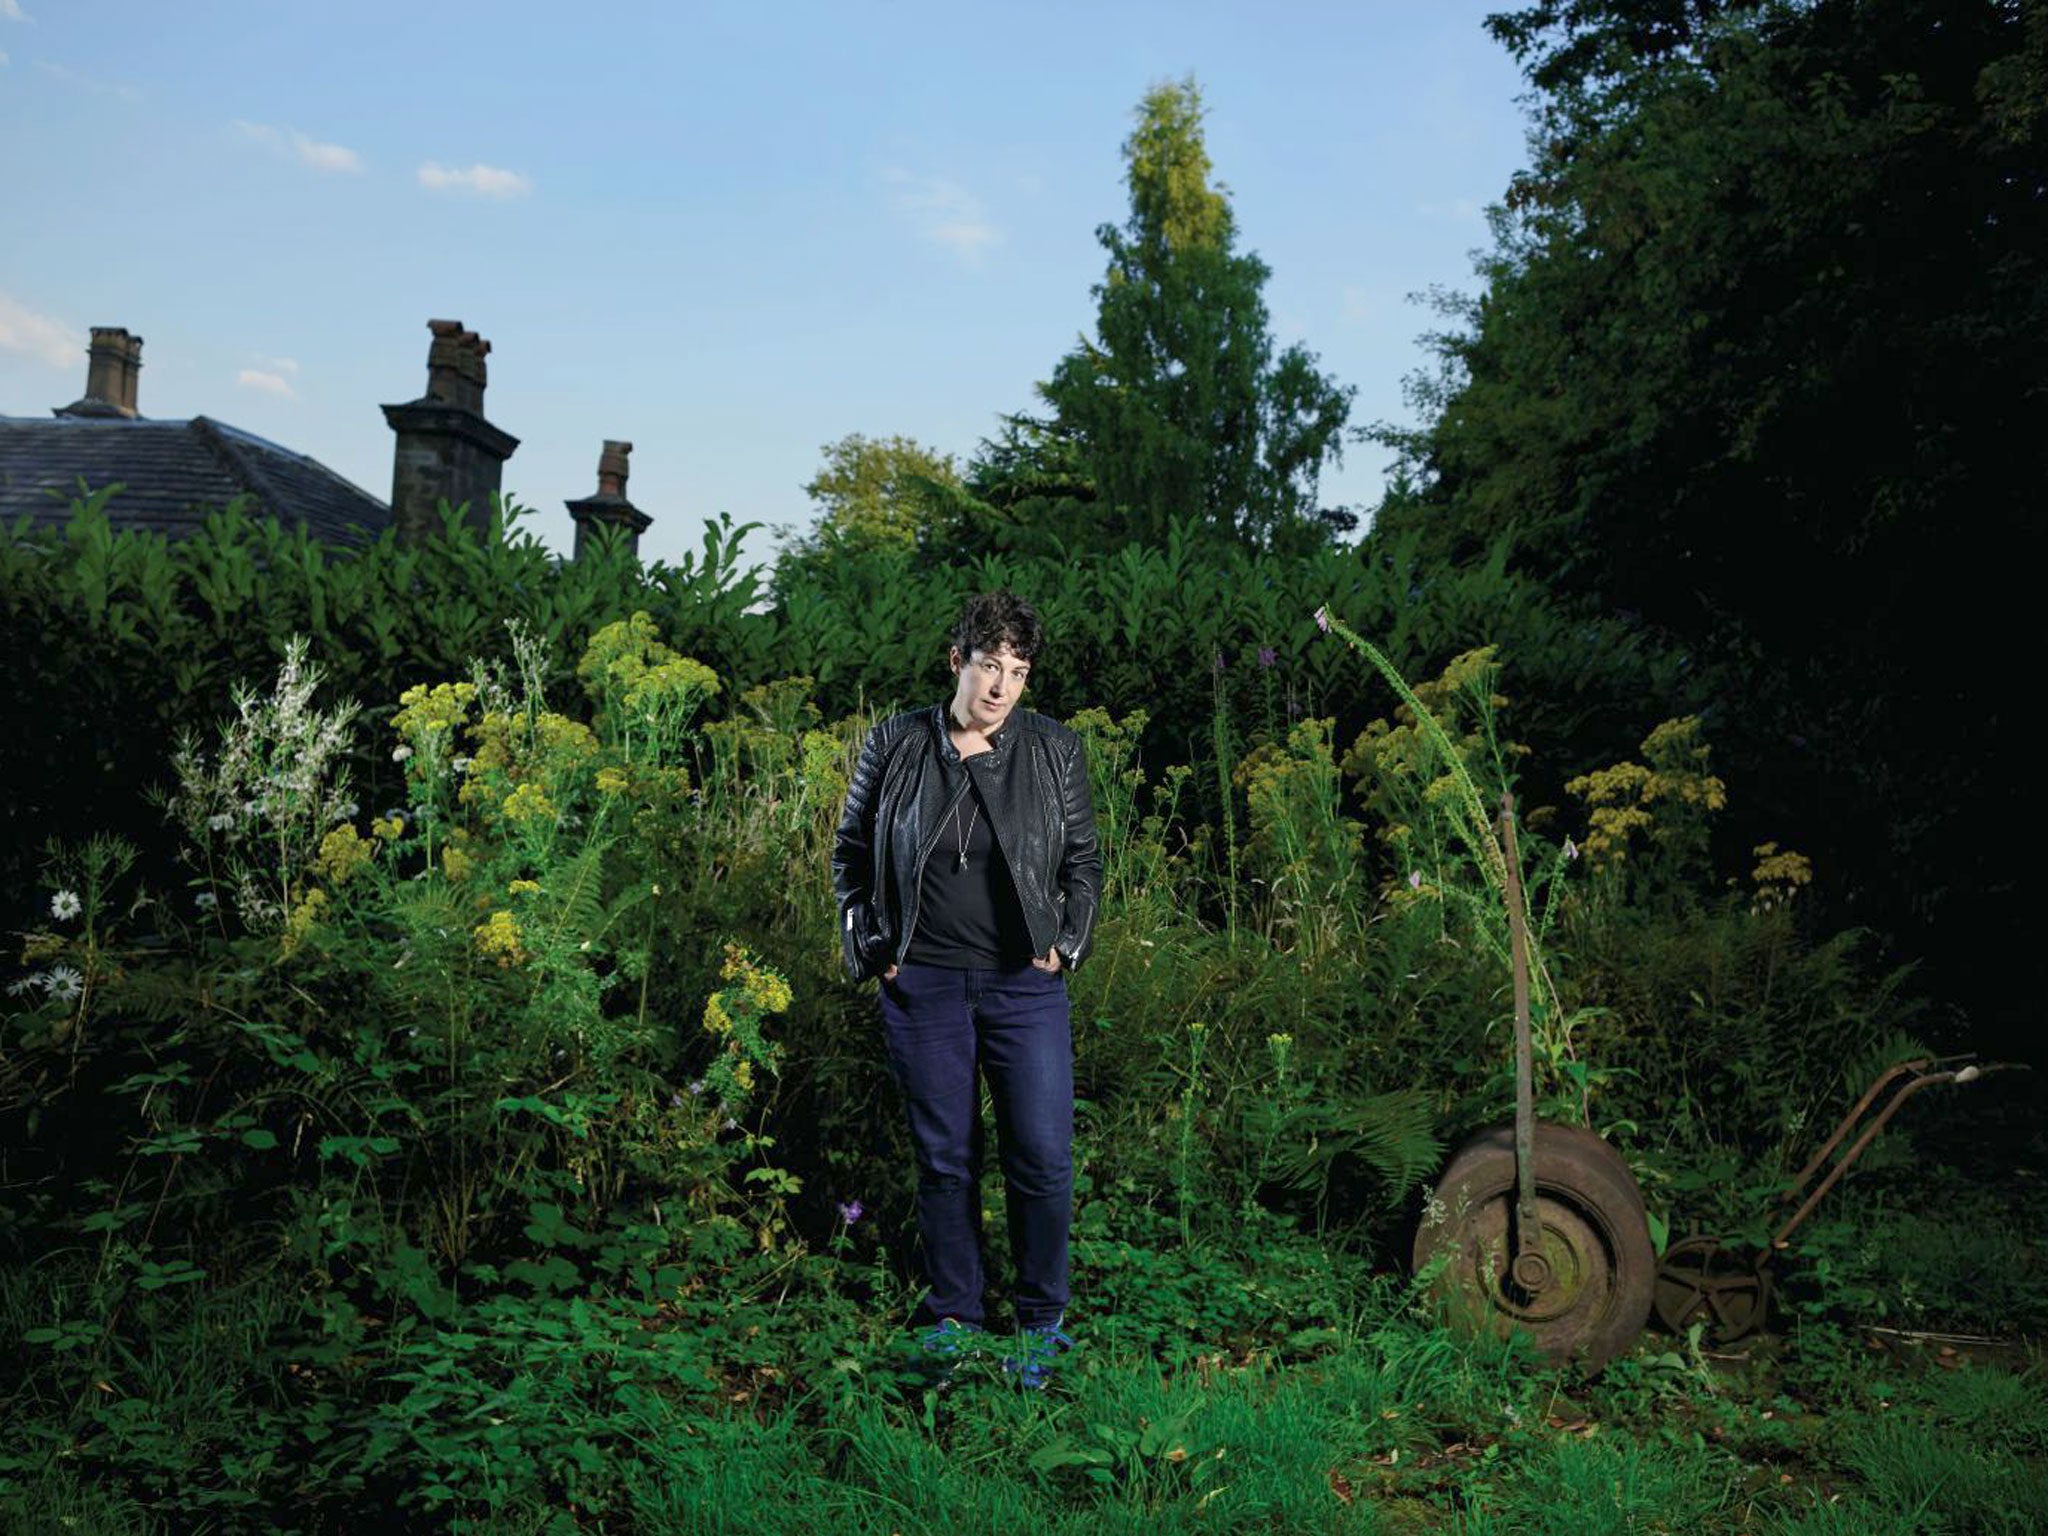 Force of nature: Joanne Harris in her garden